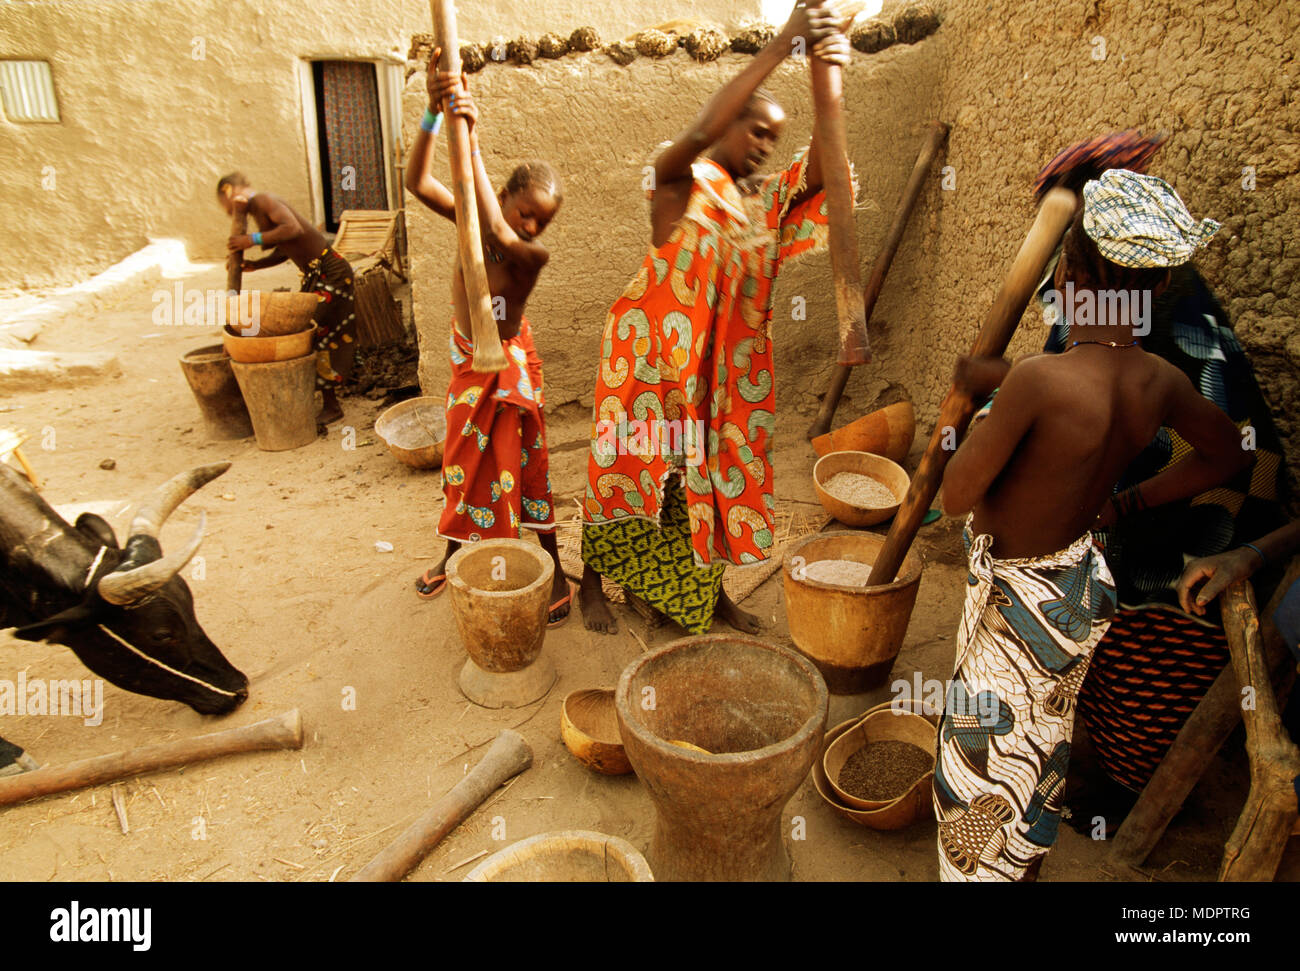 Senossa, Mali ; battre les femmes pour faire de la farine de mil à 40 degrés de chaleur. Milet est un incontournable de la région du Sahel et est également fermenté pour faire de la bière. Banque D'Images